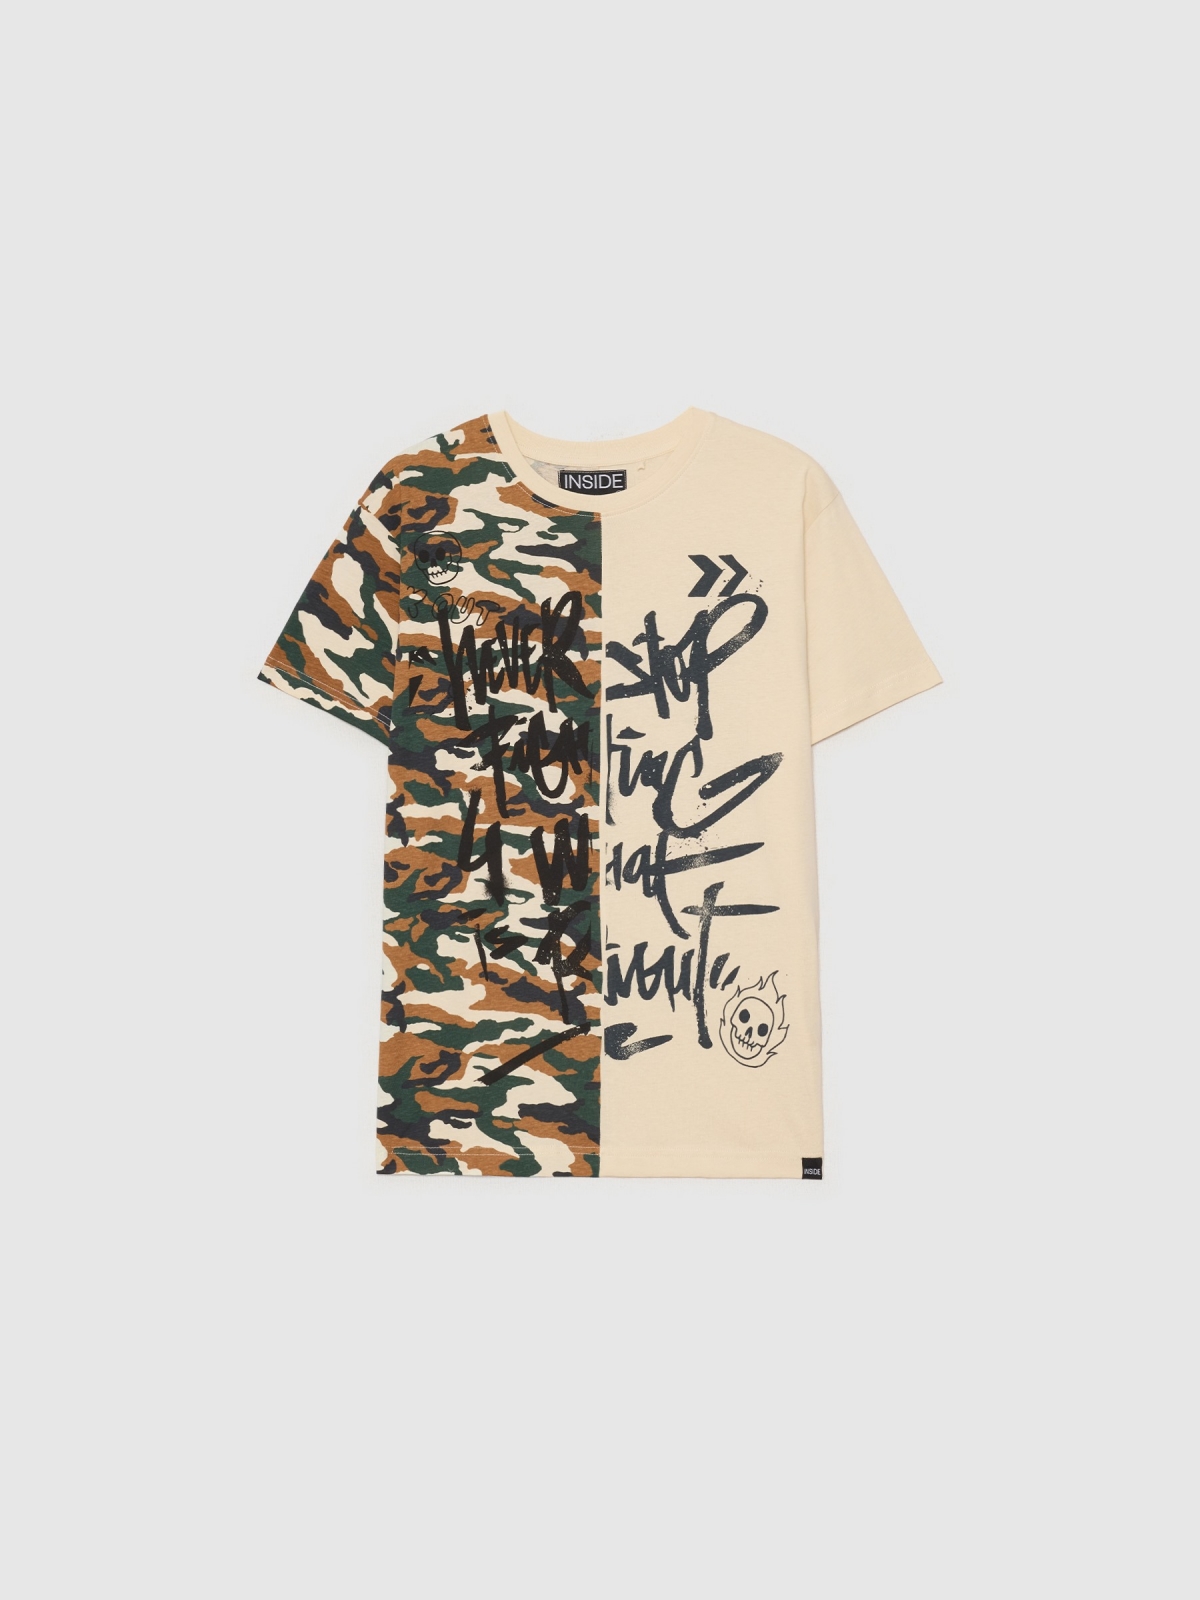  T-shirt de camuflagem com graffiti areia